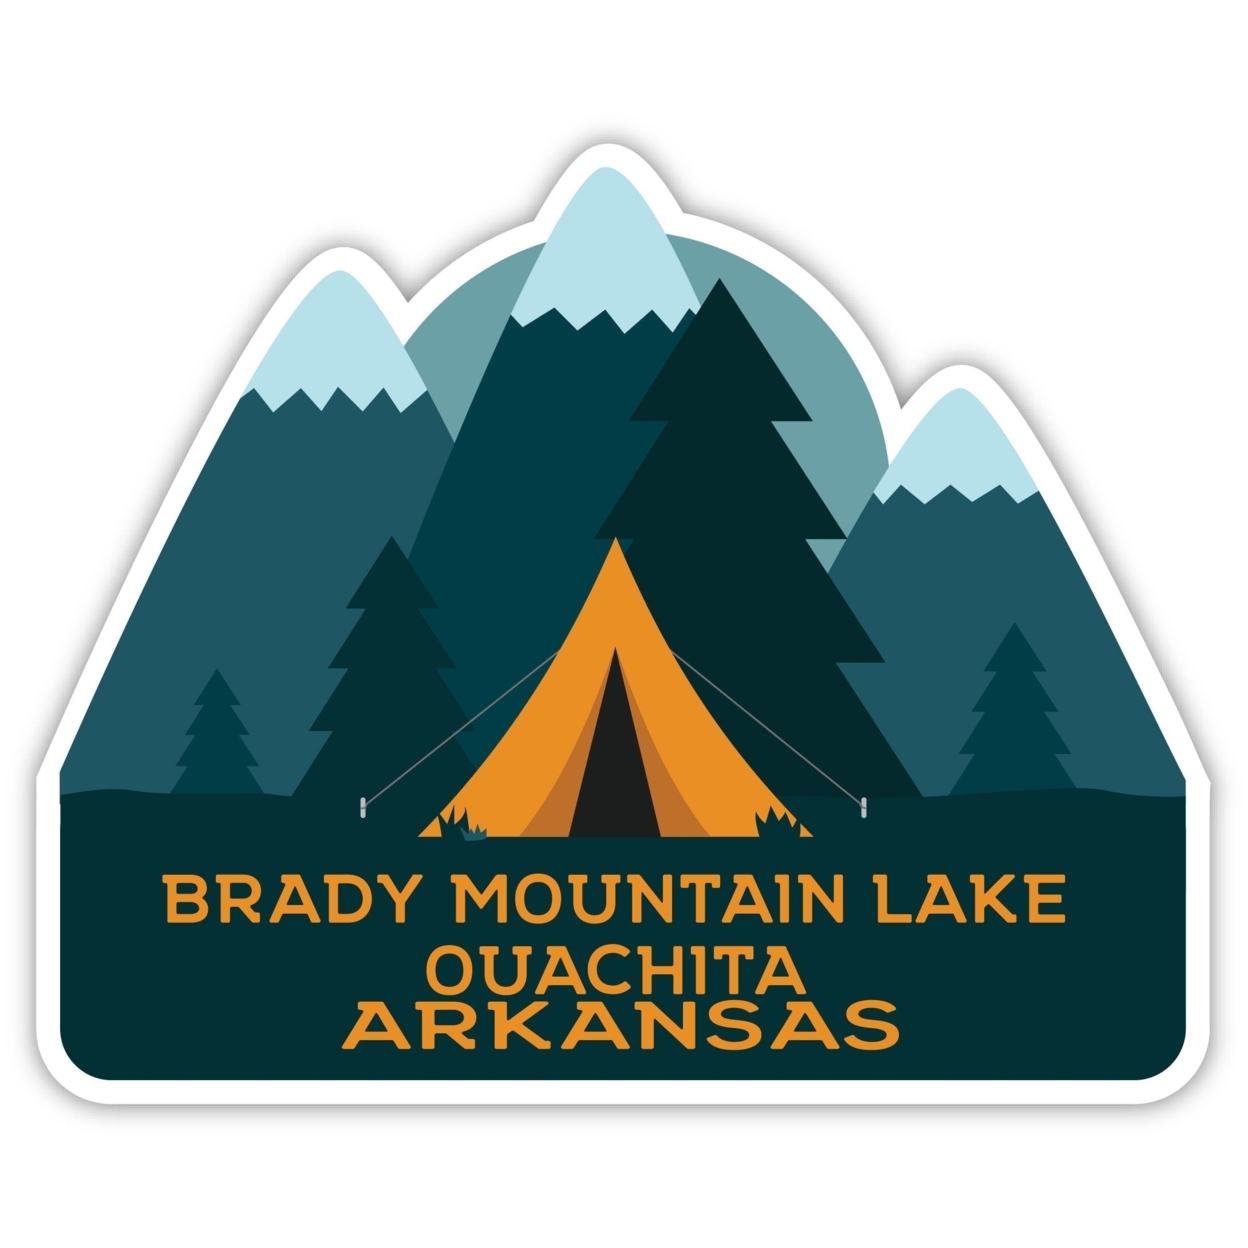 Brady Mountain Lake Ouachita Arkansas Souvenir Decorative Stickers (Choose Theme And Size) - Single Unit, 12-Inch, Bear